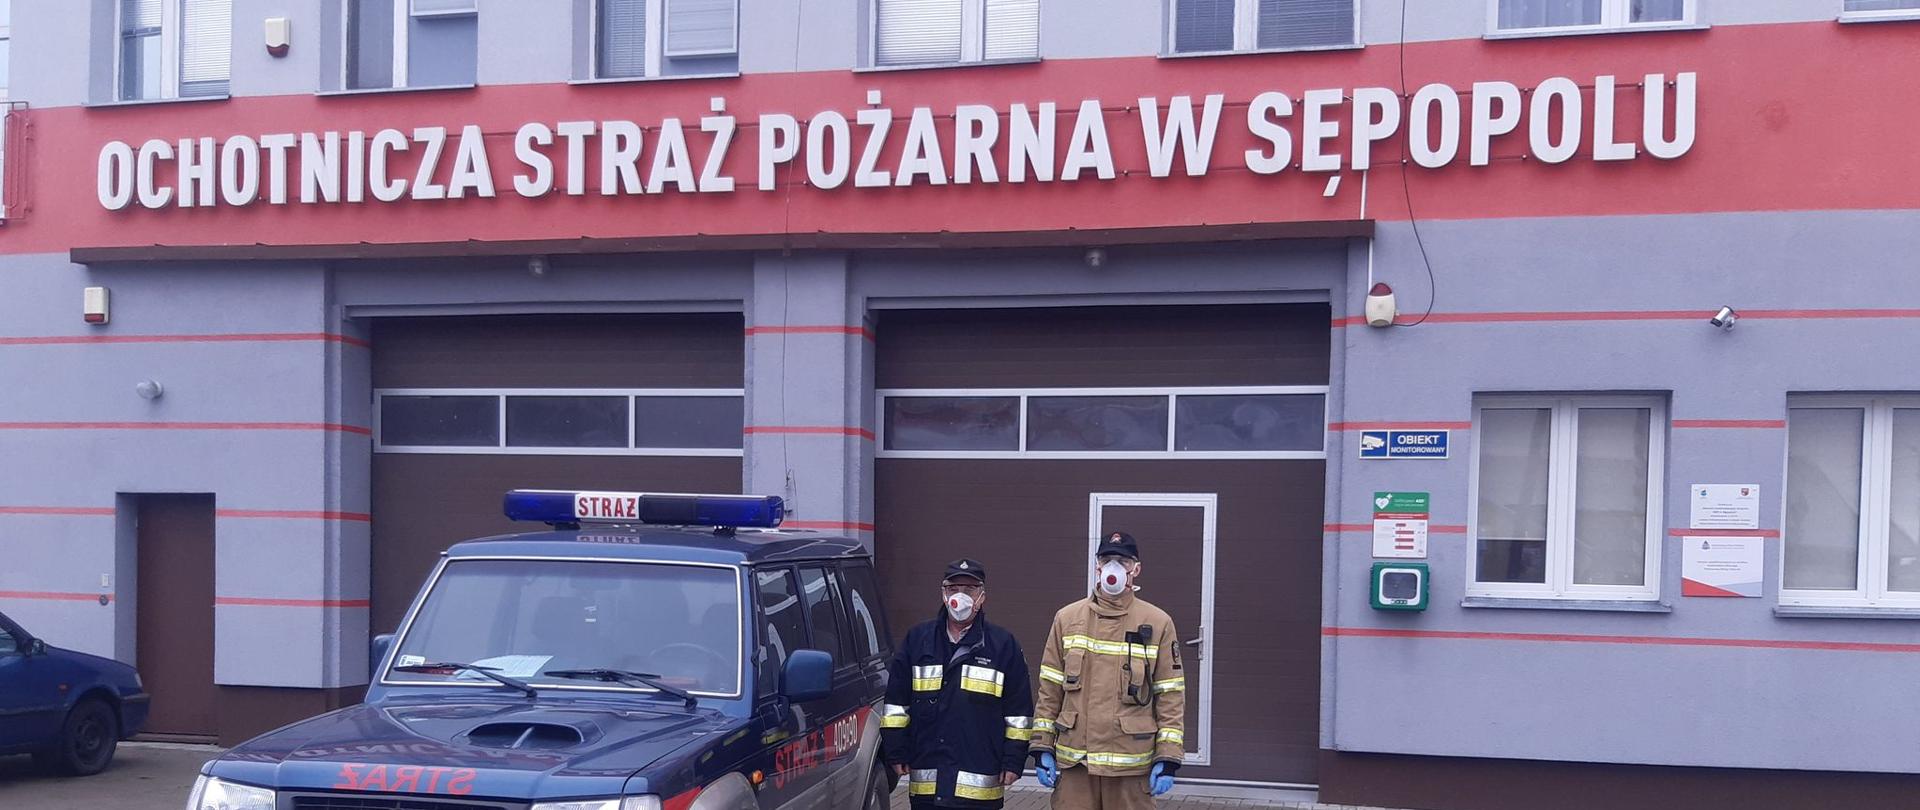 Na zdjęciu widać samochód i dwóch strażaków z Ochotniczej Straży Pożarnej w Sępopolu przygotowanych do transportu osób na szczepienia